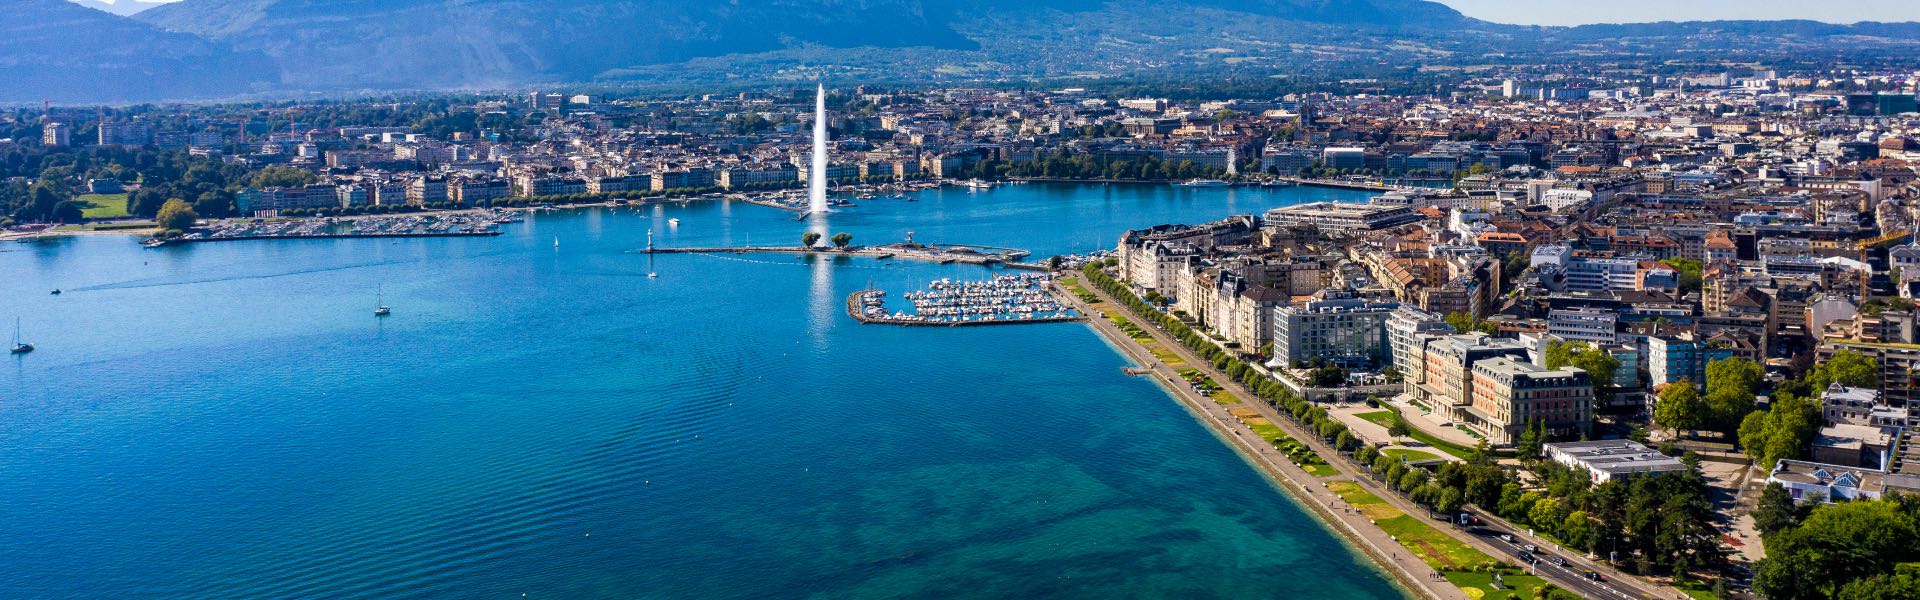 Panorama du lac de Genève avec son jet d'eau et les façades de la ville se reflétant dans le lac